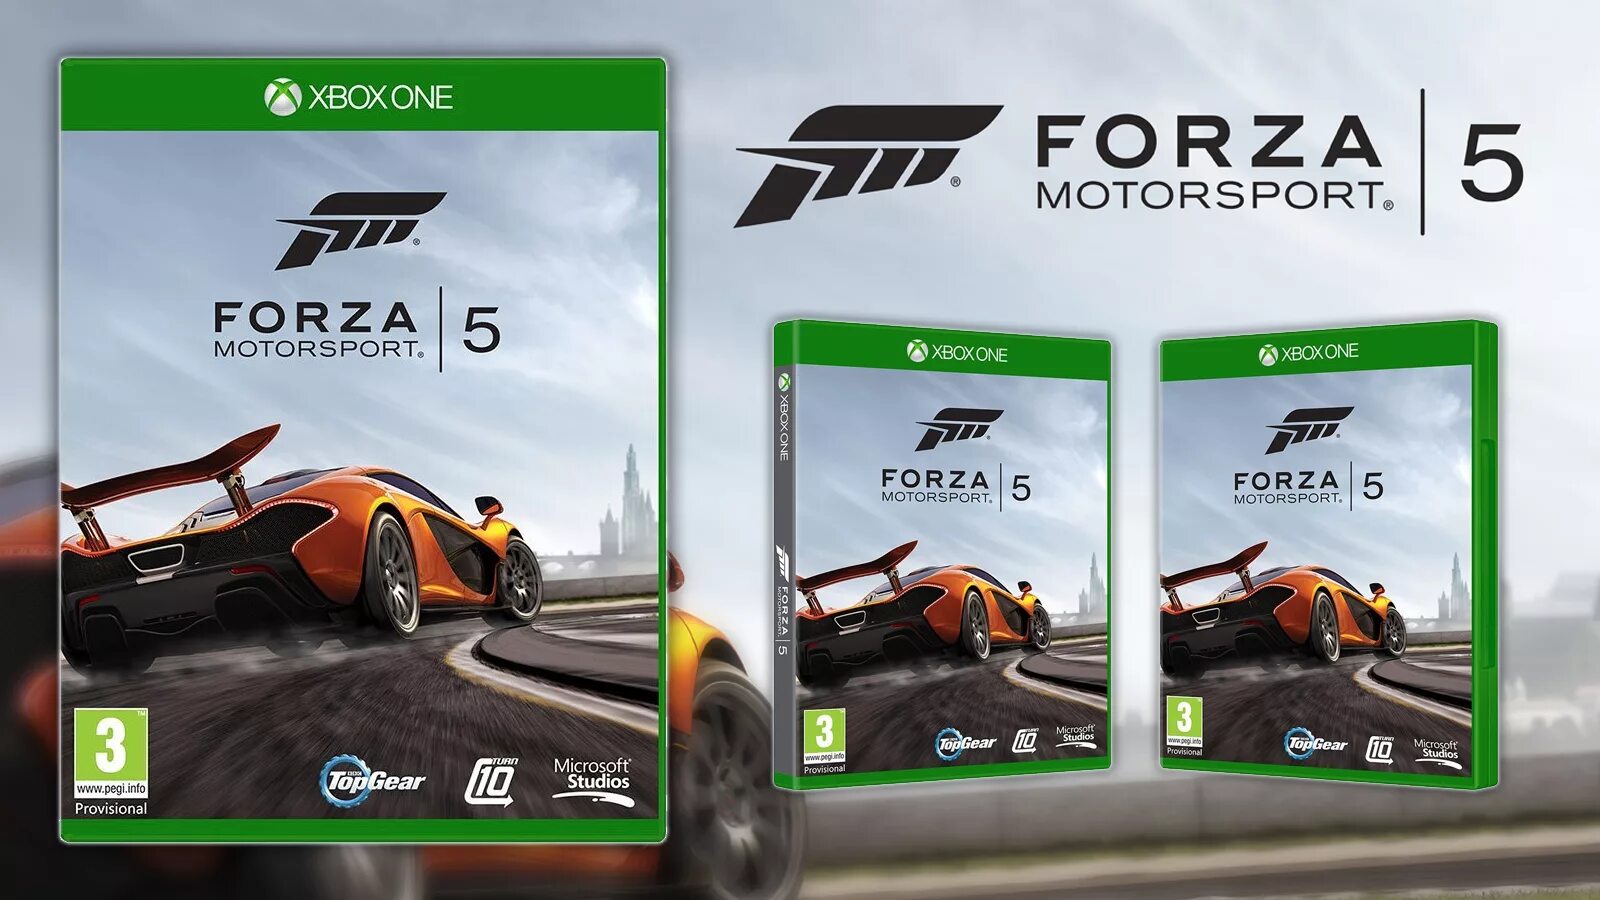 Диск Forza Horizon 5 на Xbox one. Forza 5 Xbox one. Forza Motorsport 5 Xbox 360. Forza Motorsport 5 Xbox one обложка. Форза хбокс